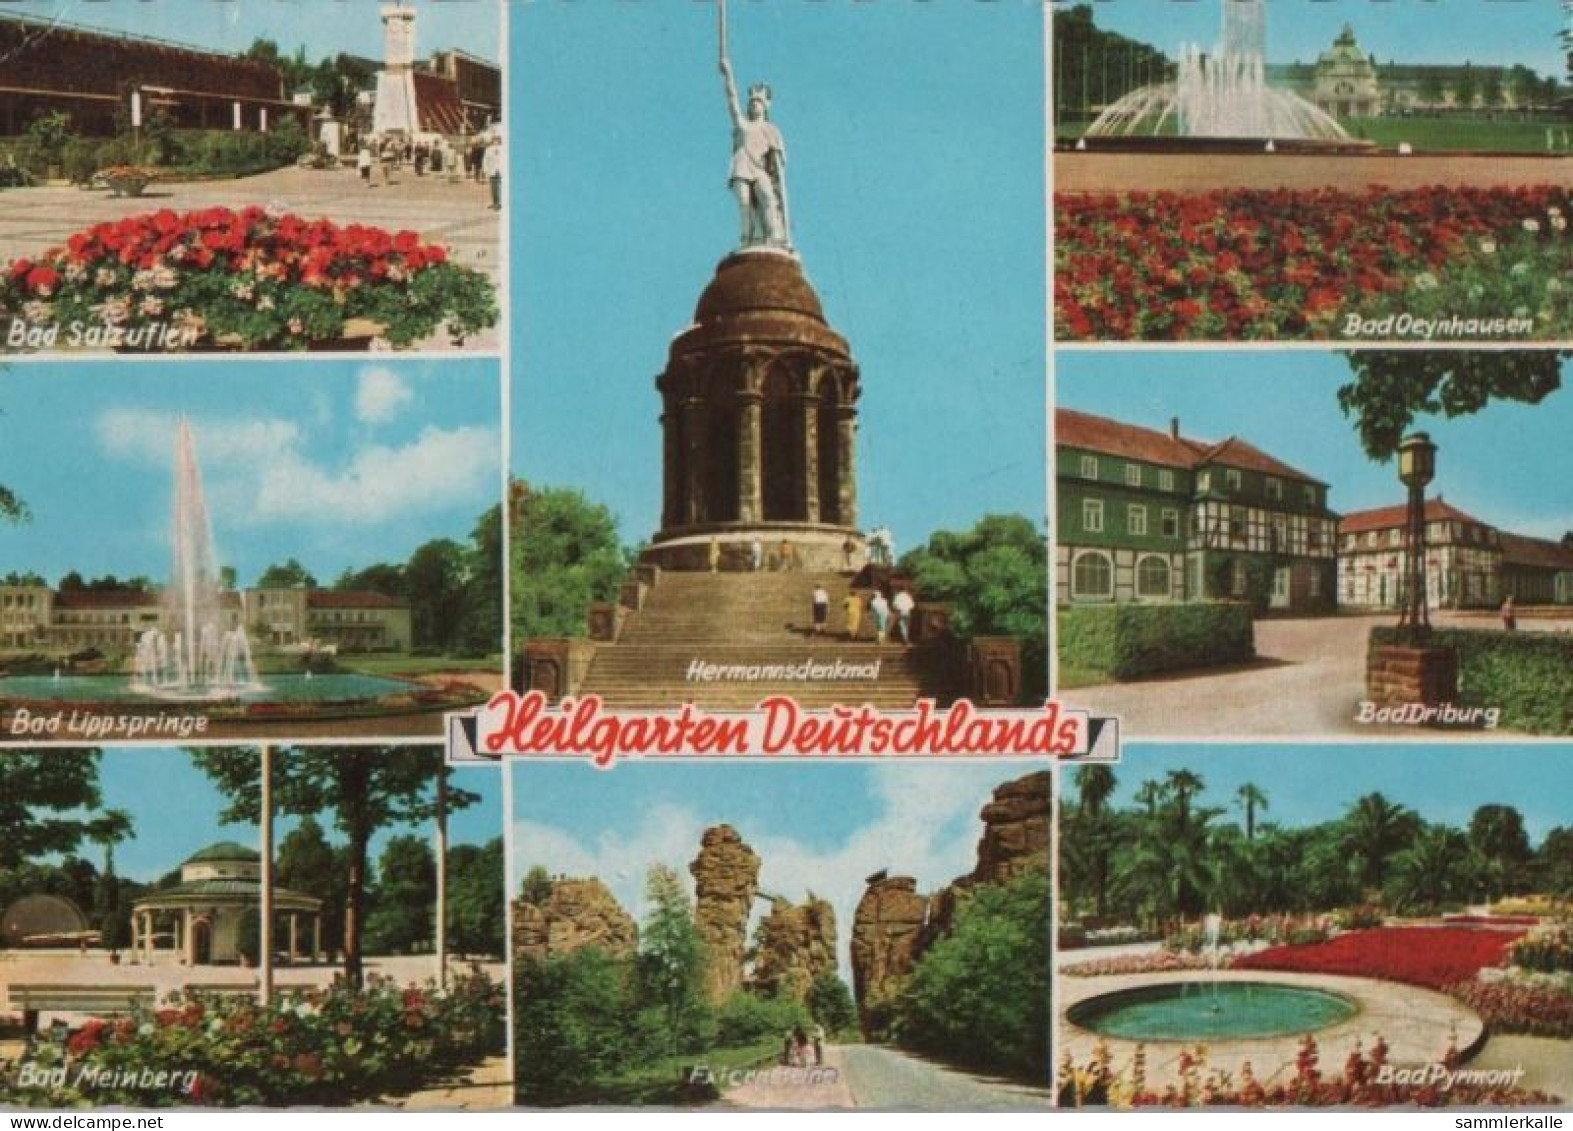 48361 - Hermannsdenkmal Bei Hiddesen - Heilgarten Deutschlands - 1969 - Detmold